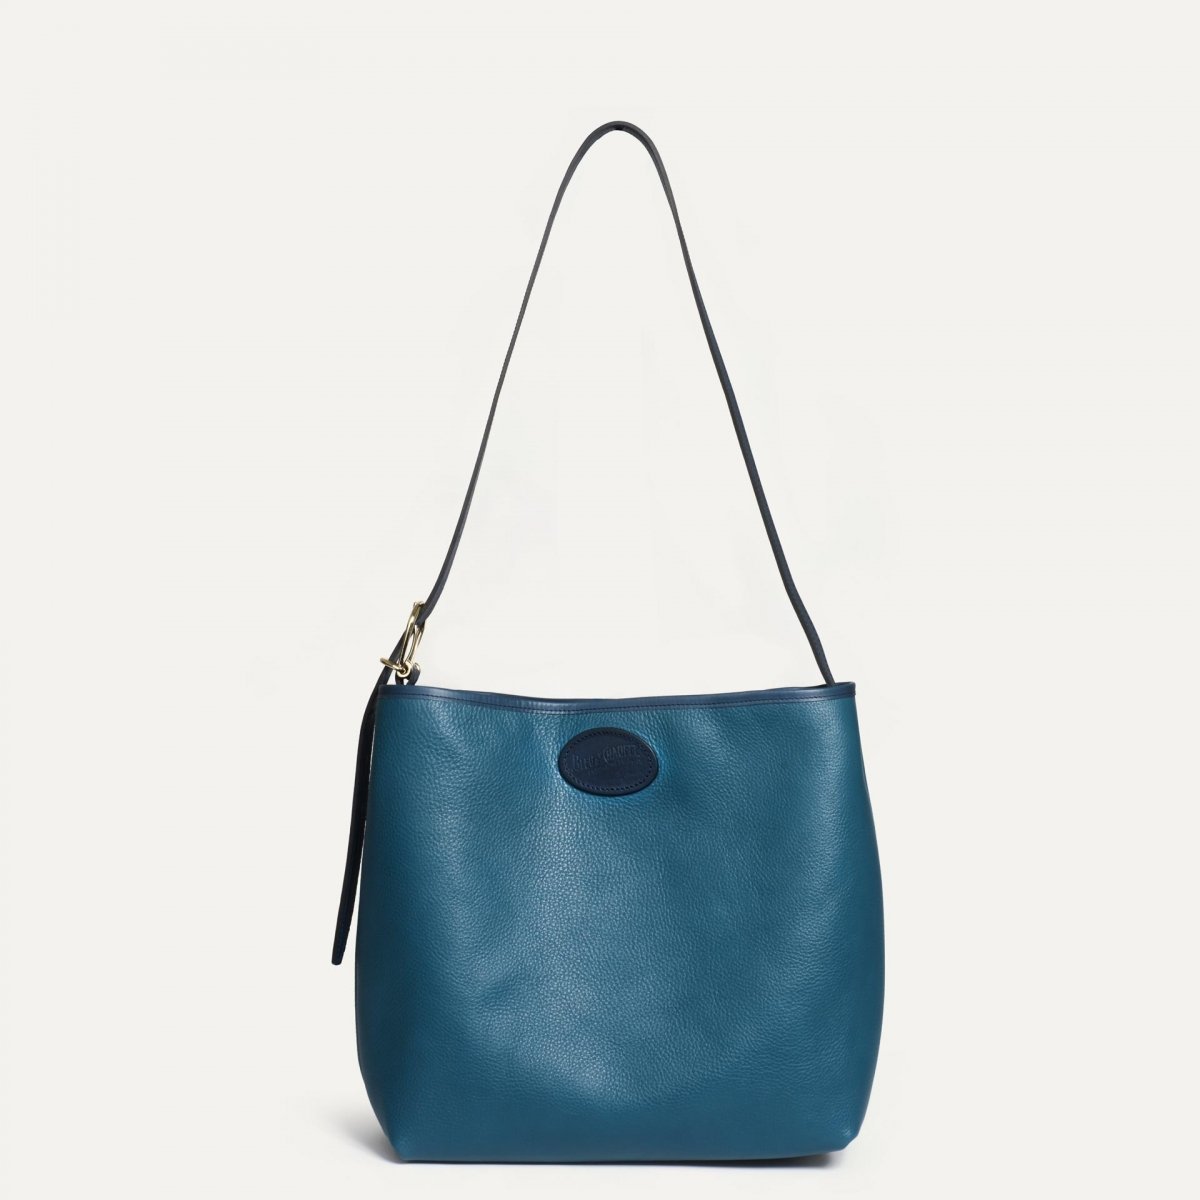 Bella besace bag - Corsair blue (image n°2)